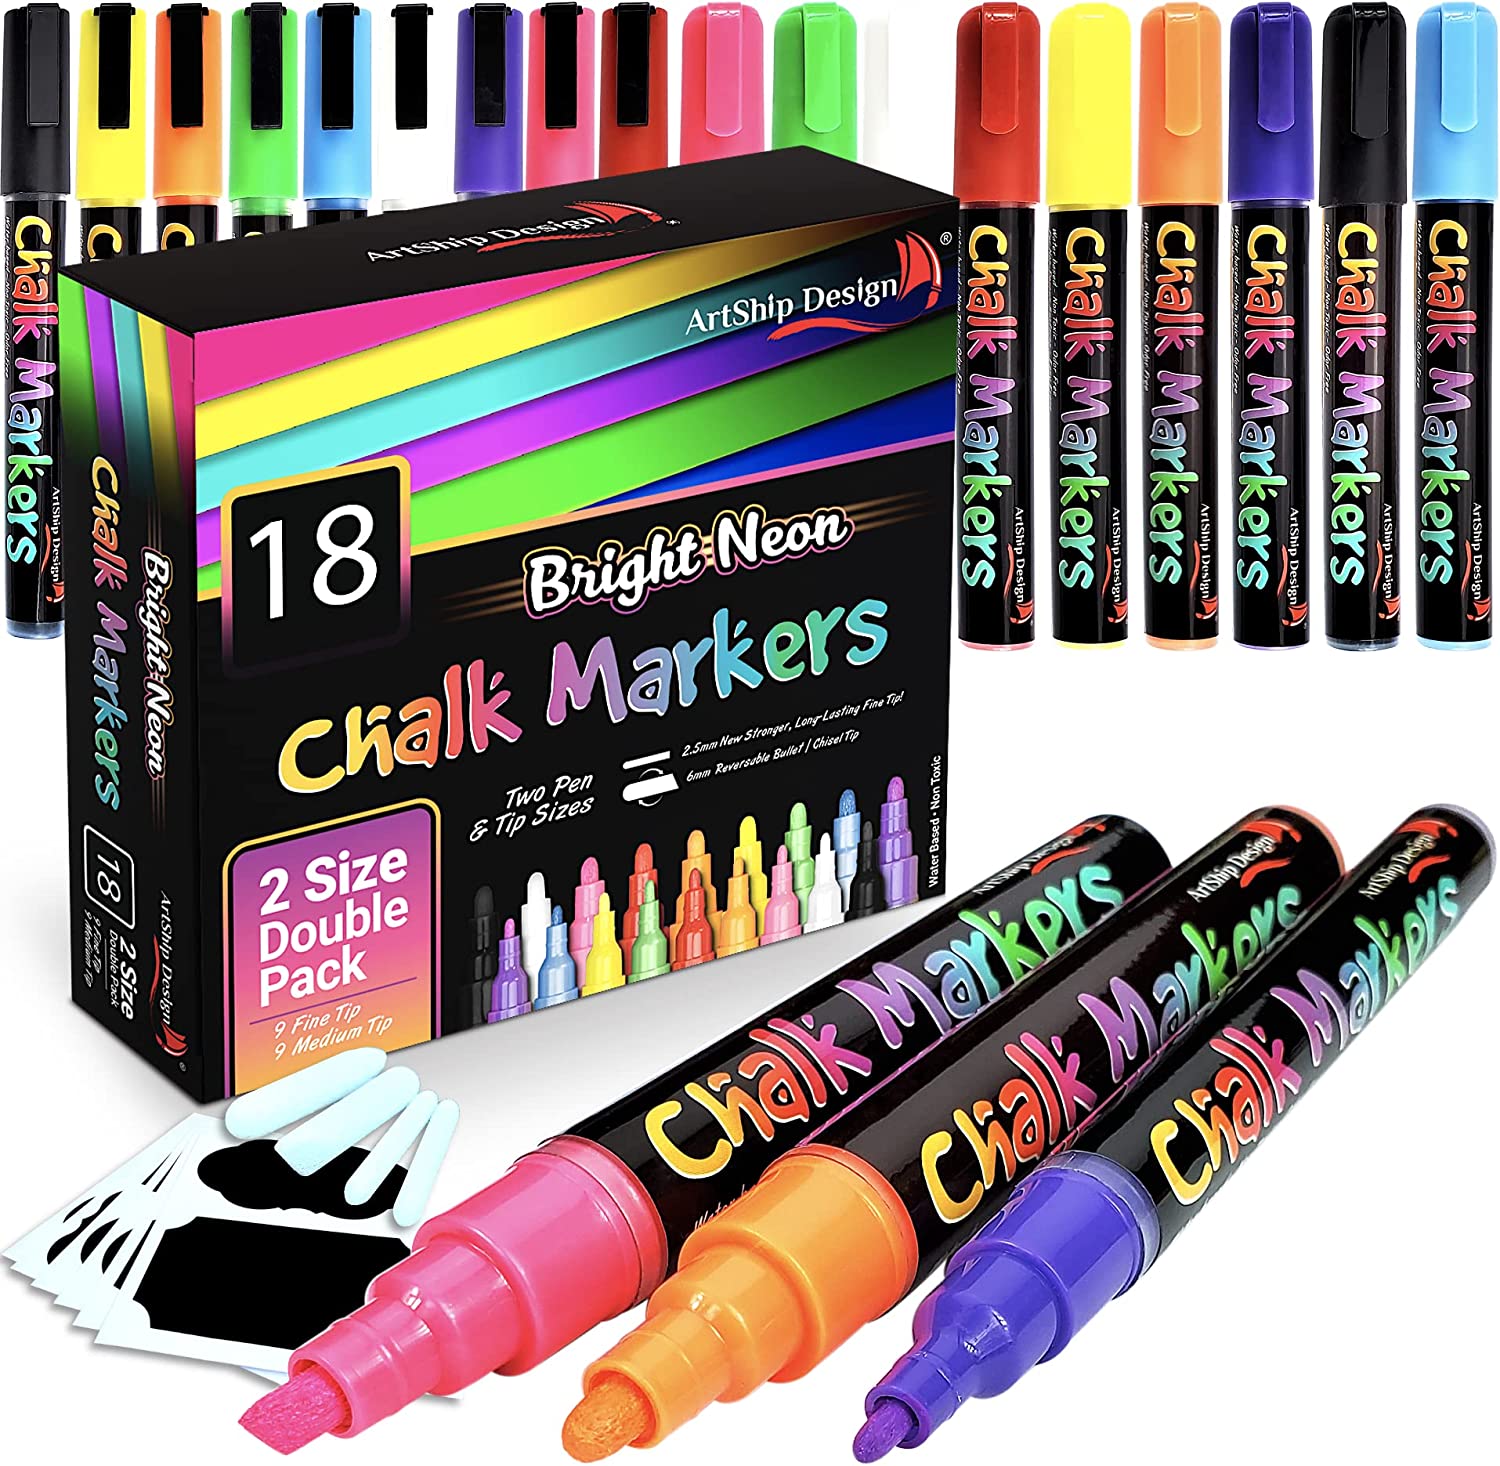 Chalk Markers by Fantastic Chalktastic Best for Kids Art Chalkboard Labels | Menu